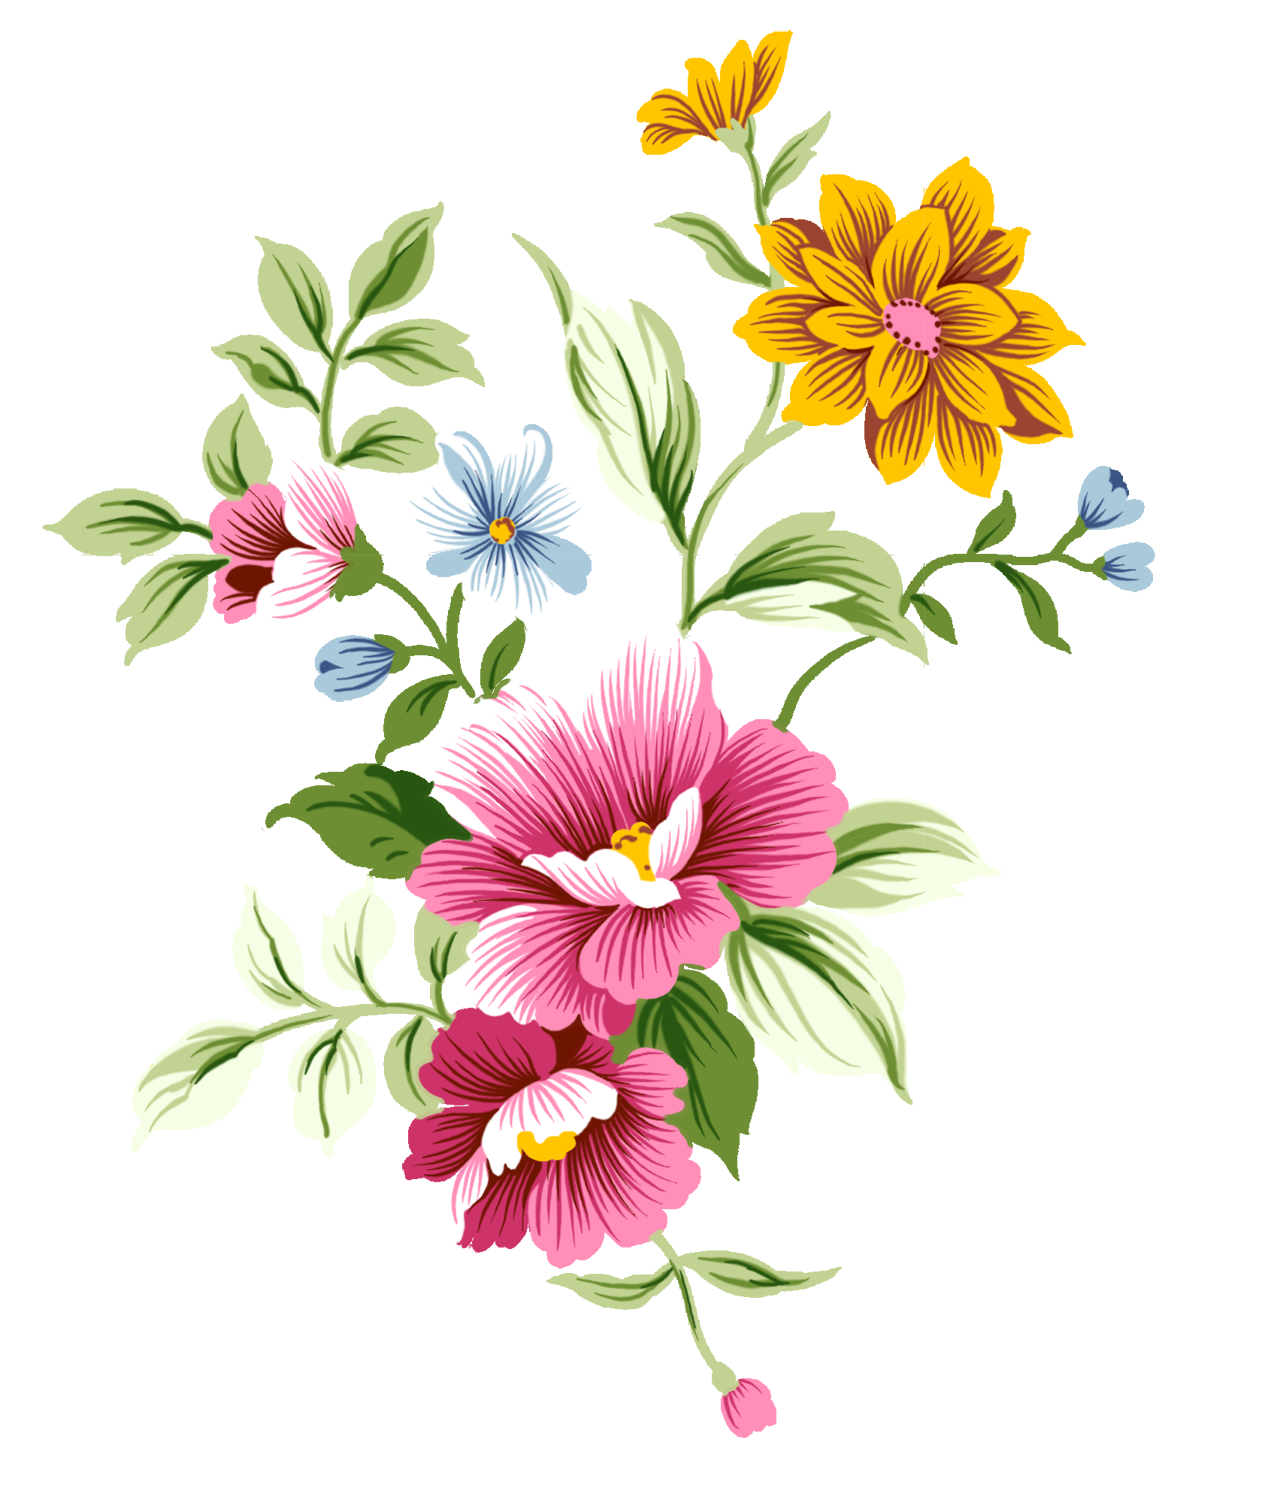 Flower PNG Transparent Image